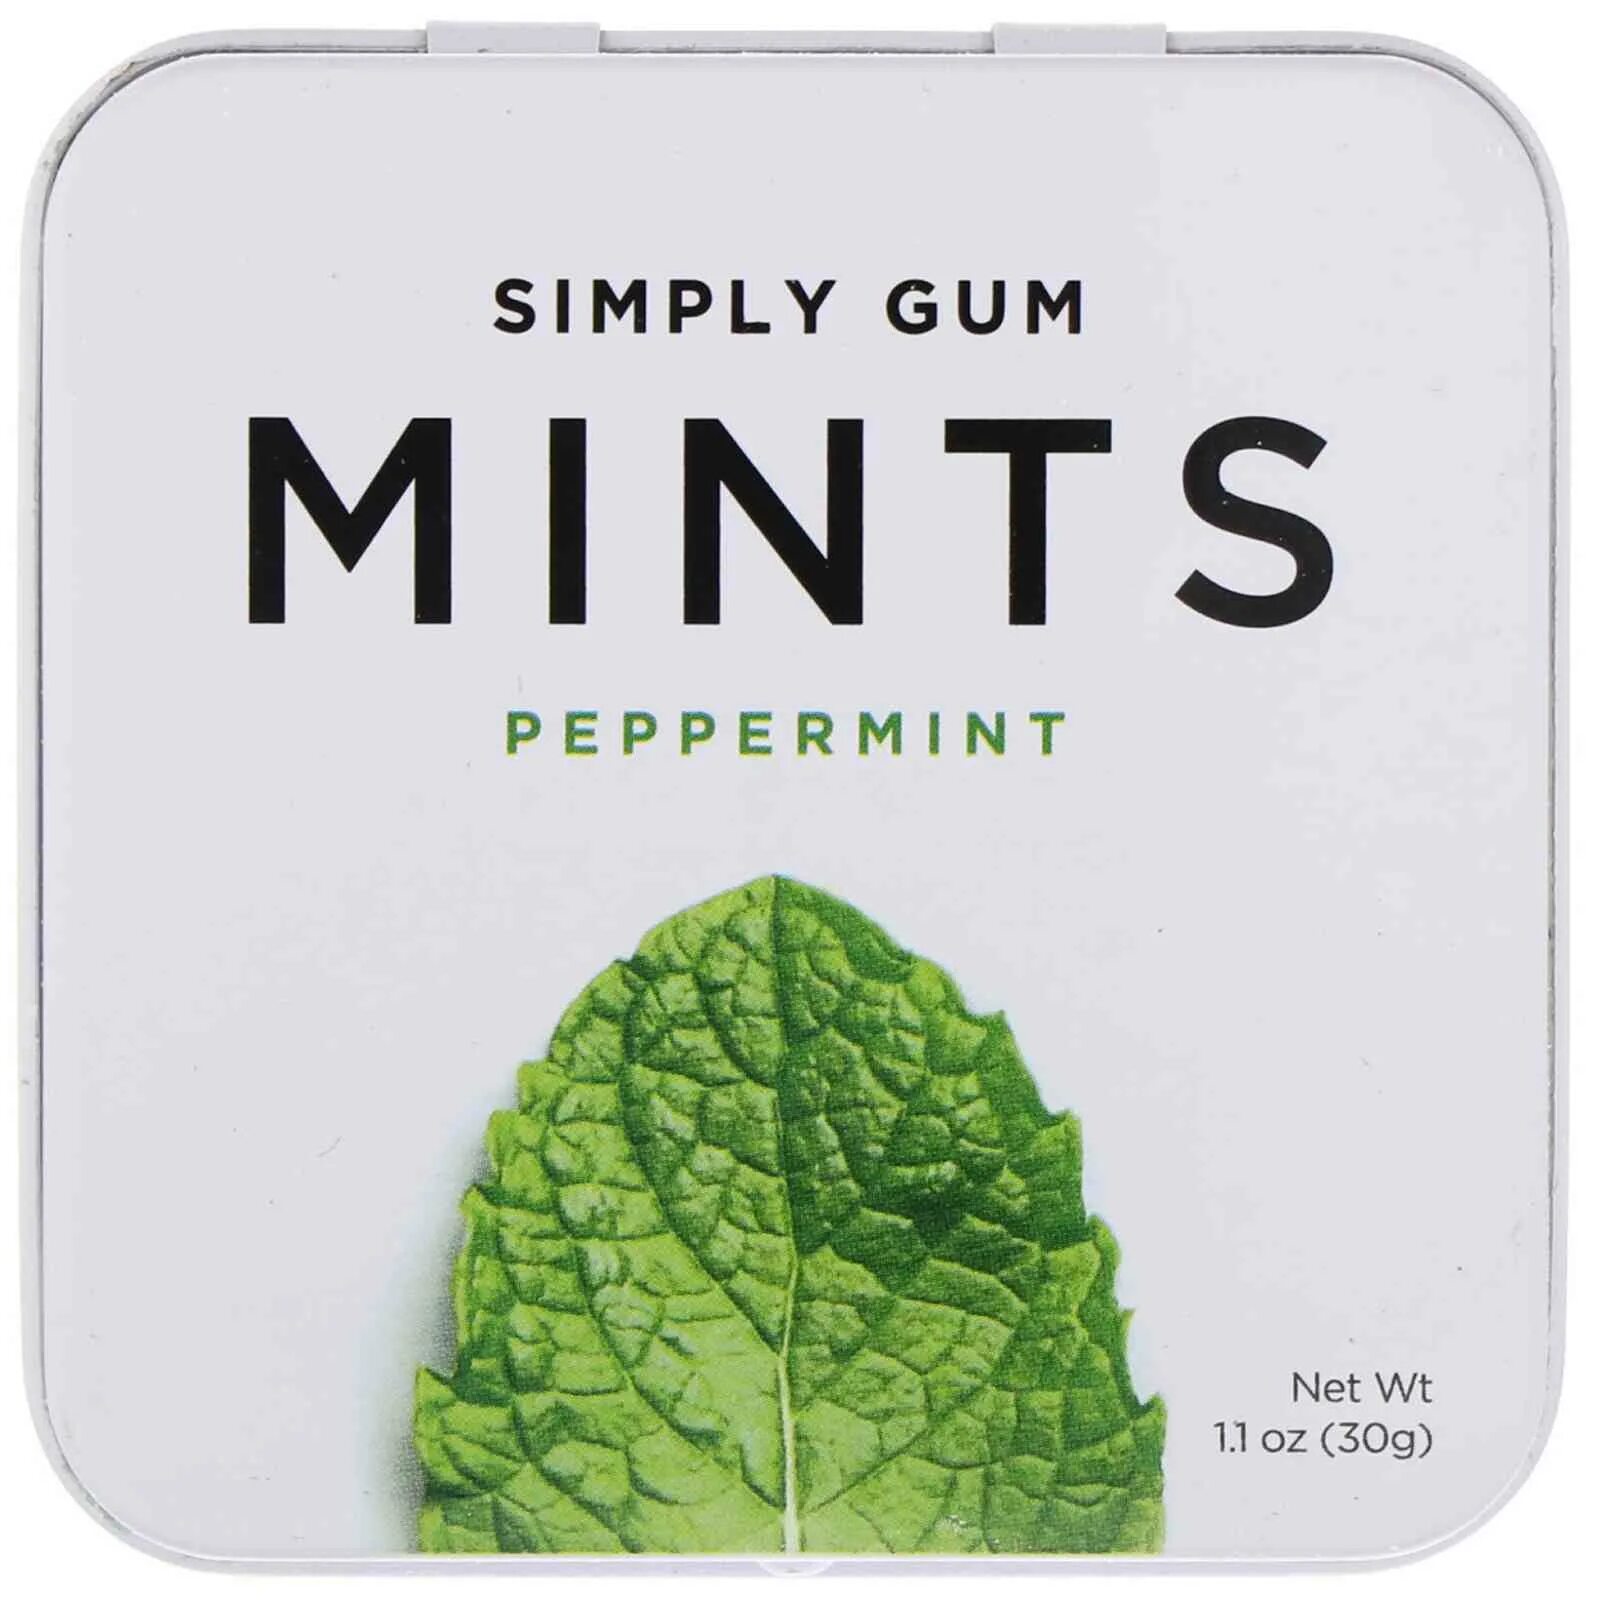 Simply gum. Simply Gum жевательная резинка. Mints конфеты Peppermint. Перечная мята конфеты.